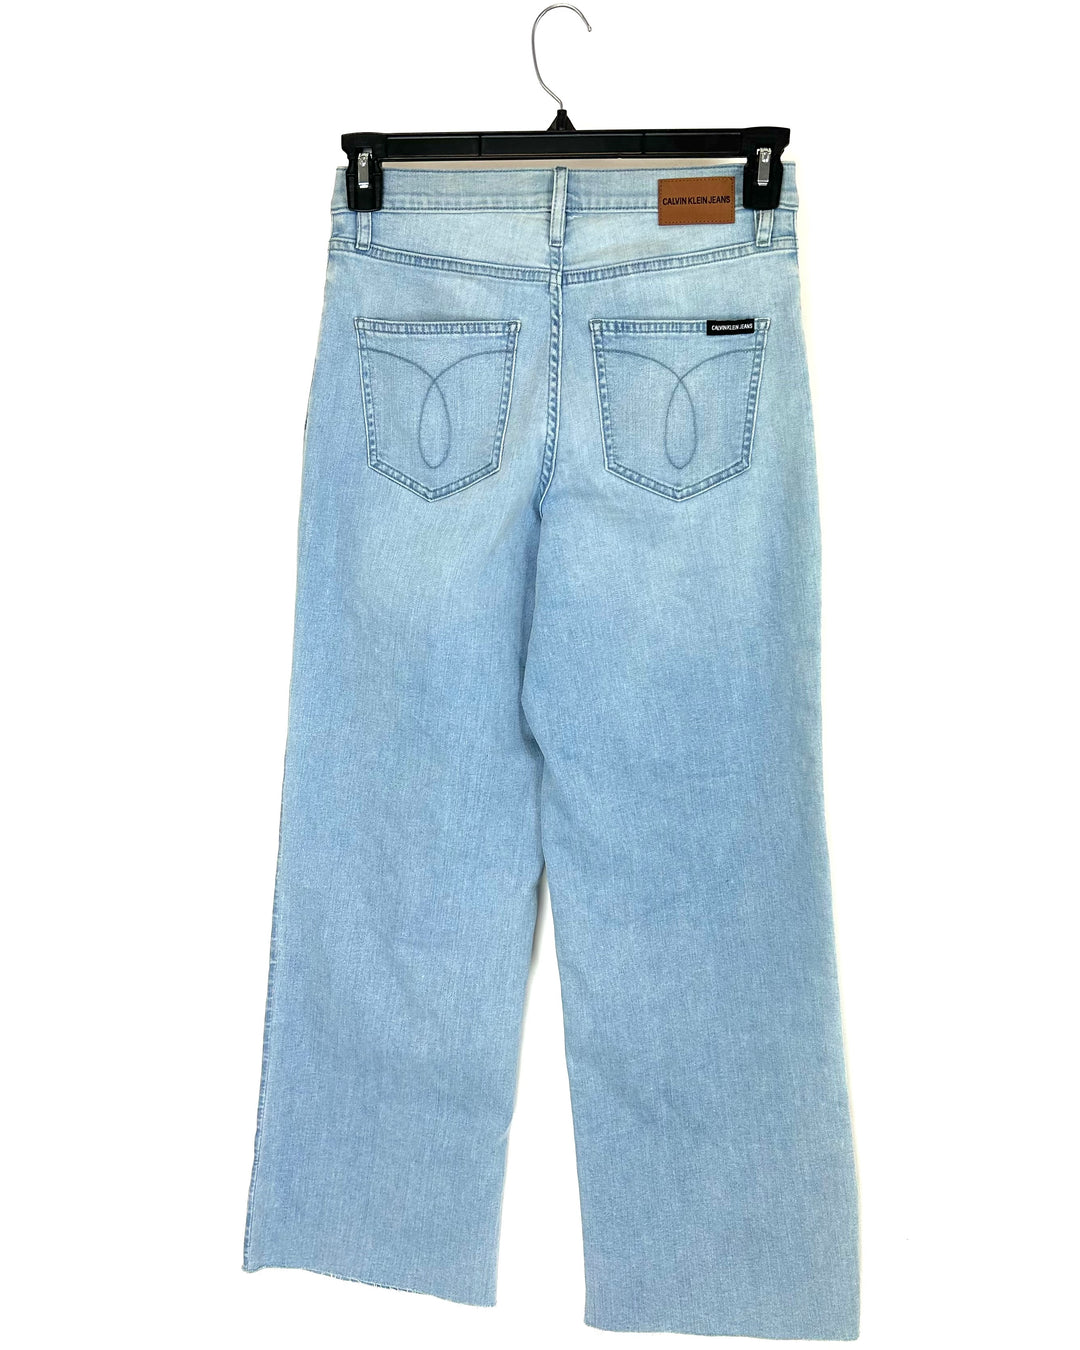 Wide Leg Jeans in Light Blue Wash - Size 28